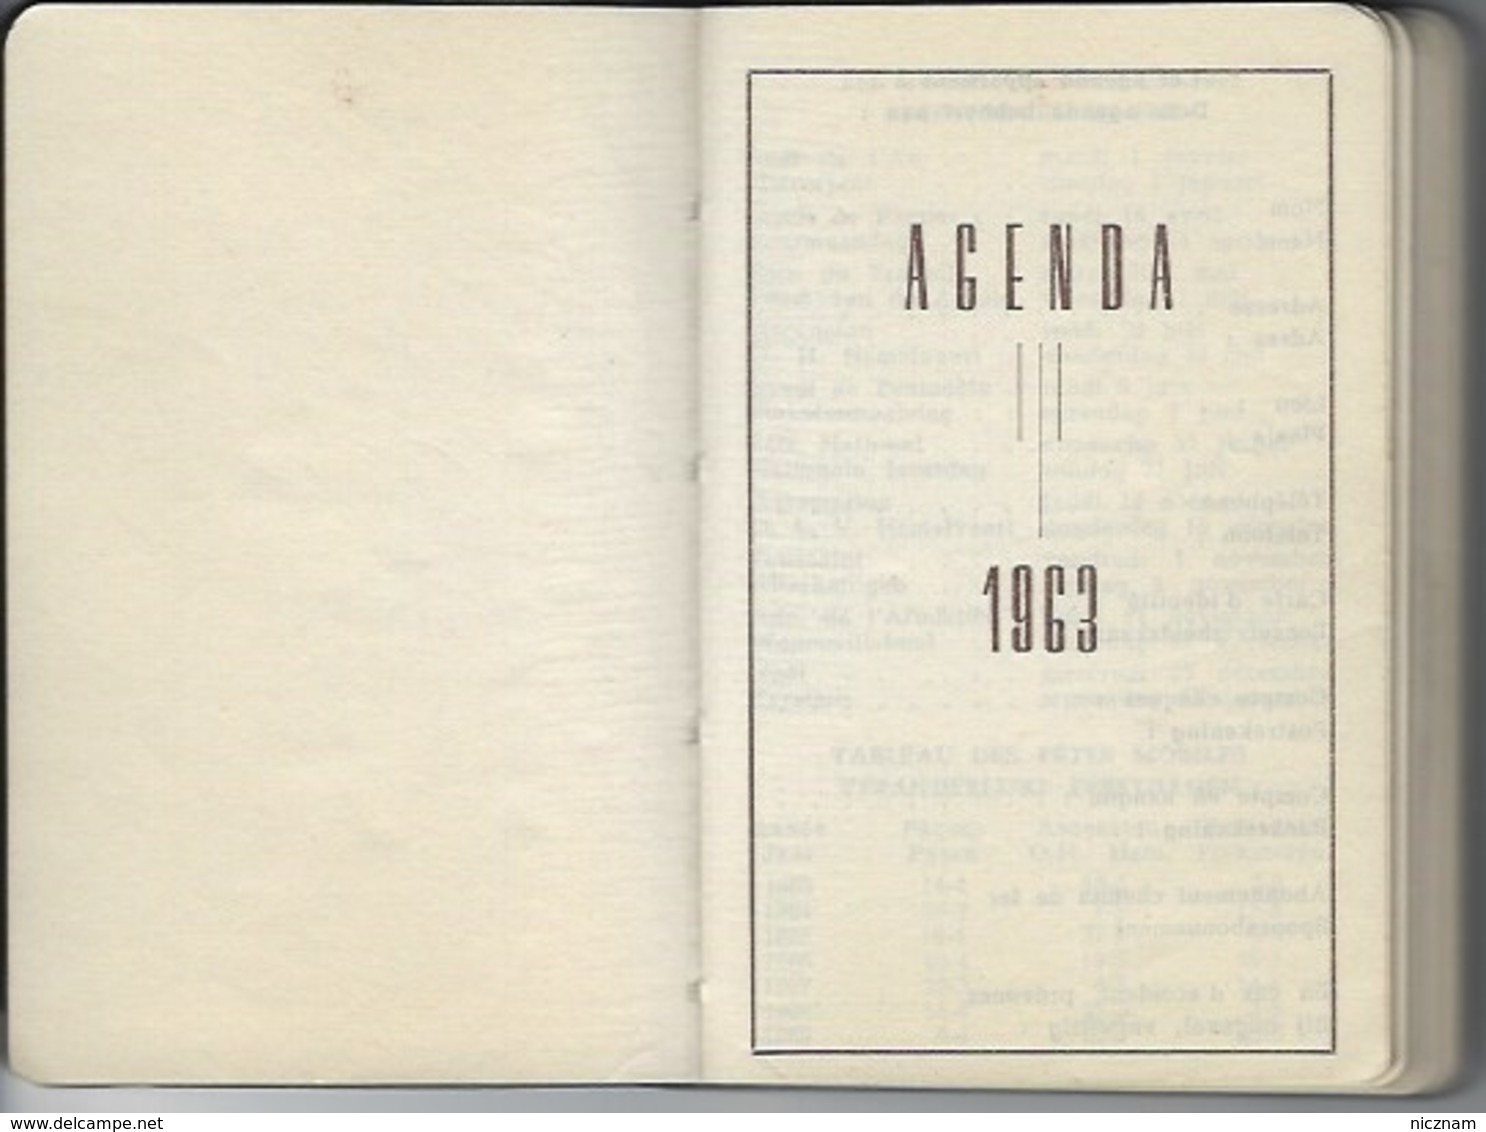 Agenda De Poche SERVICE ECONOMIQUE Et SOCIAL 1963 - Blank Diaries